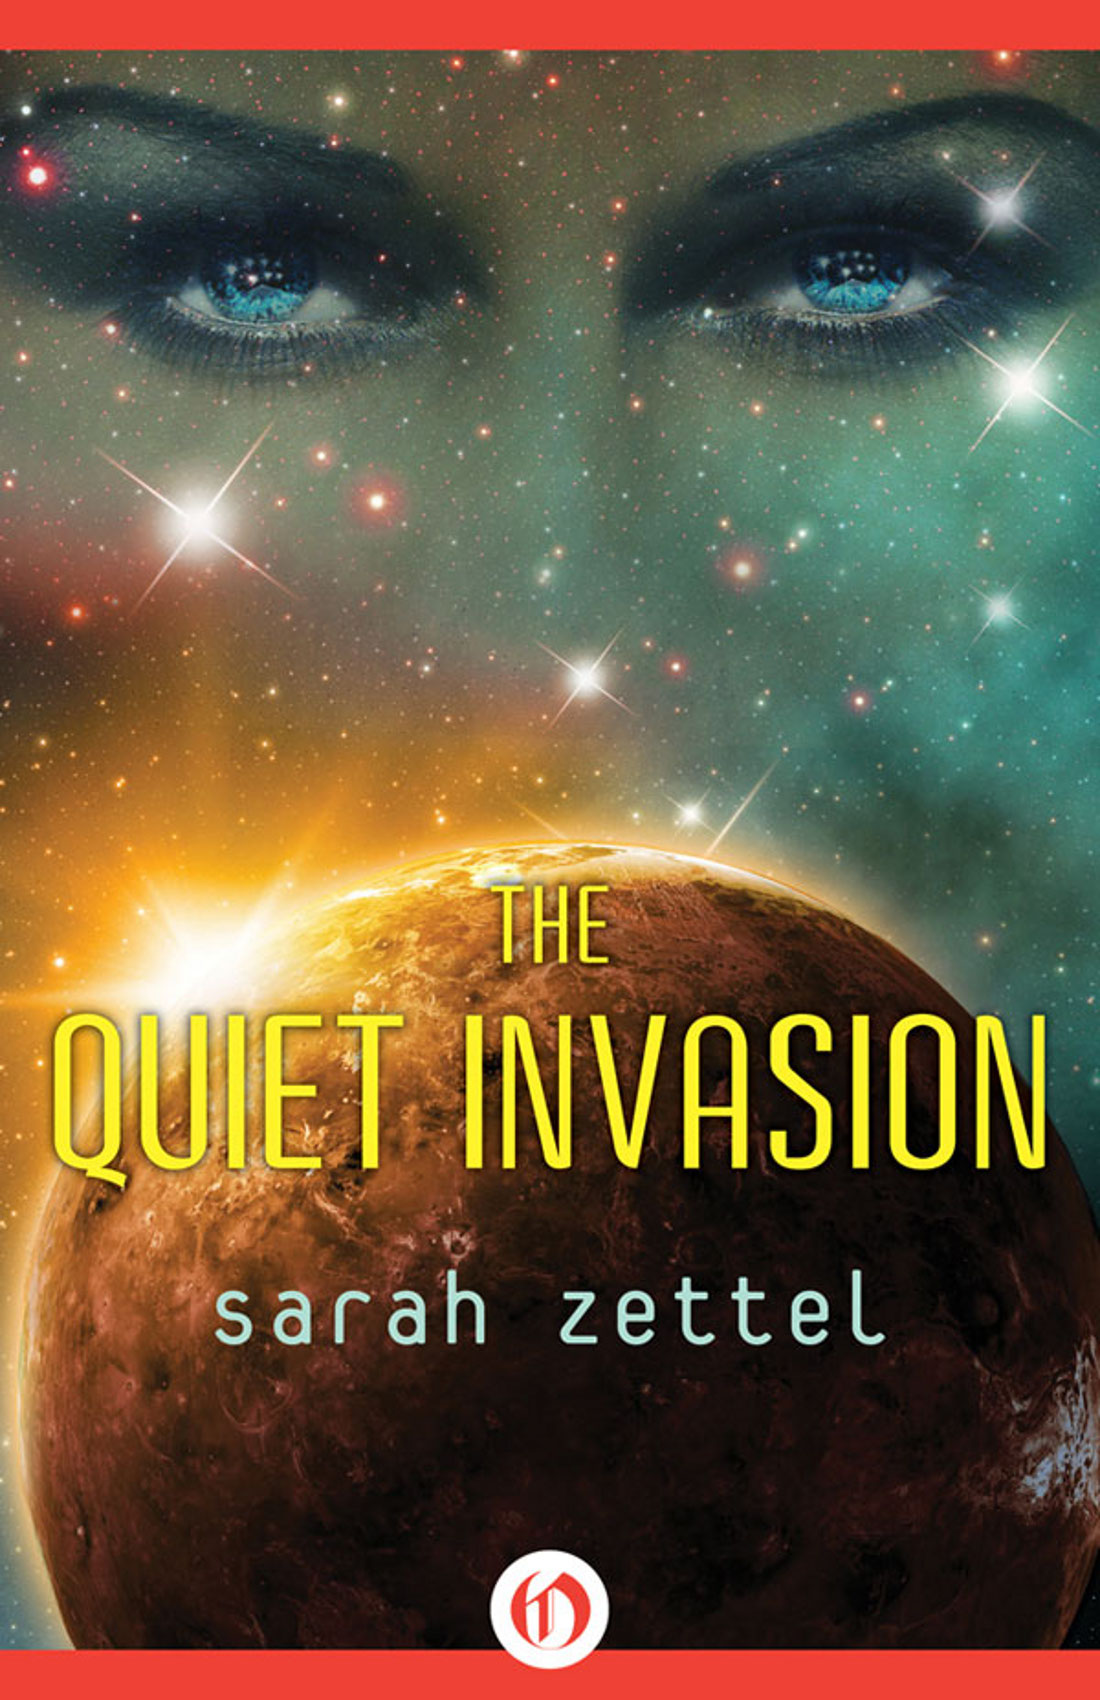 Quiet Invasion by Sarah Zettel